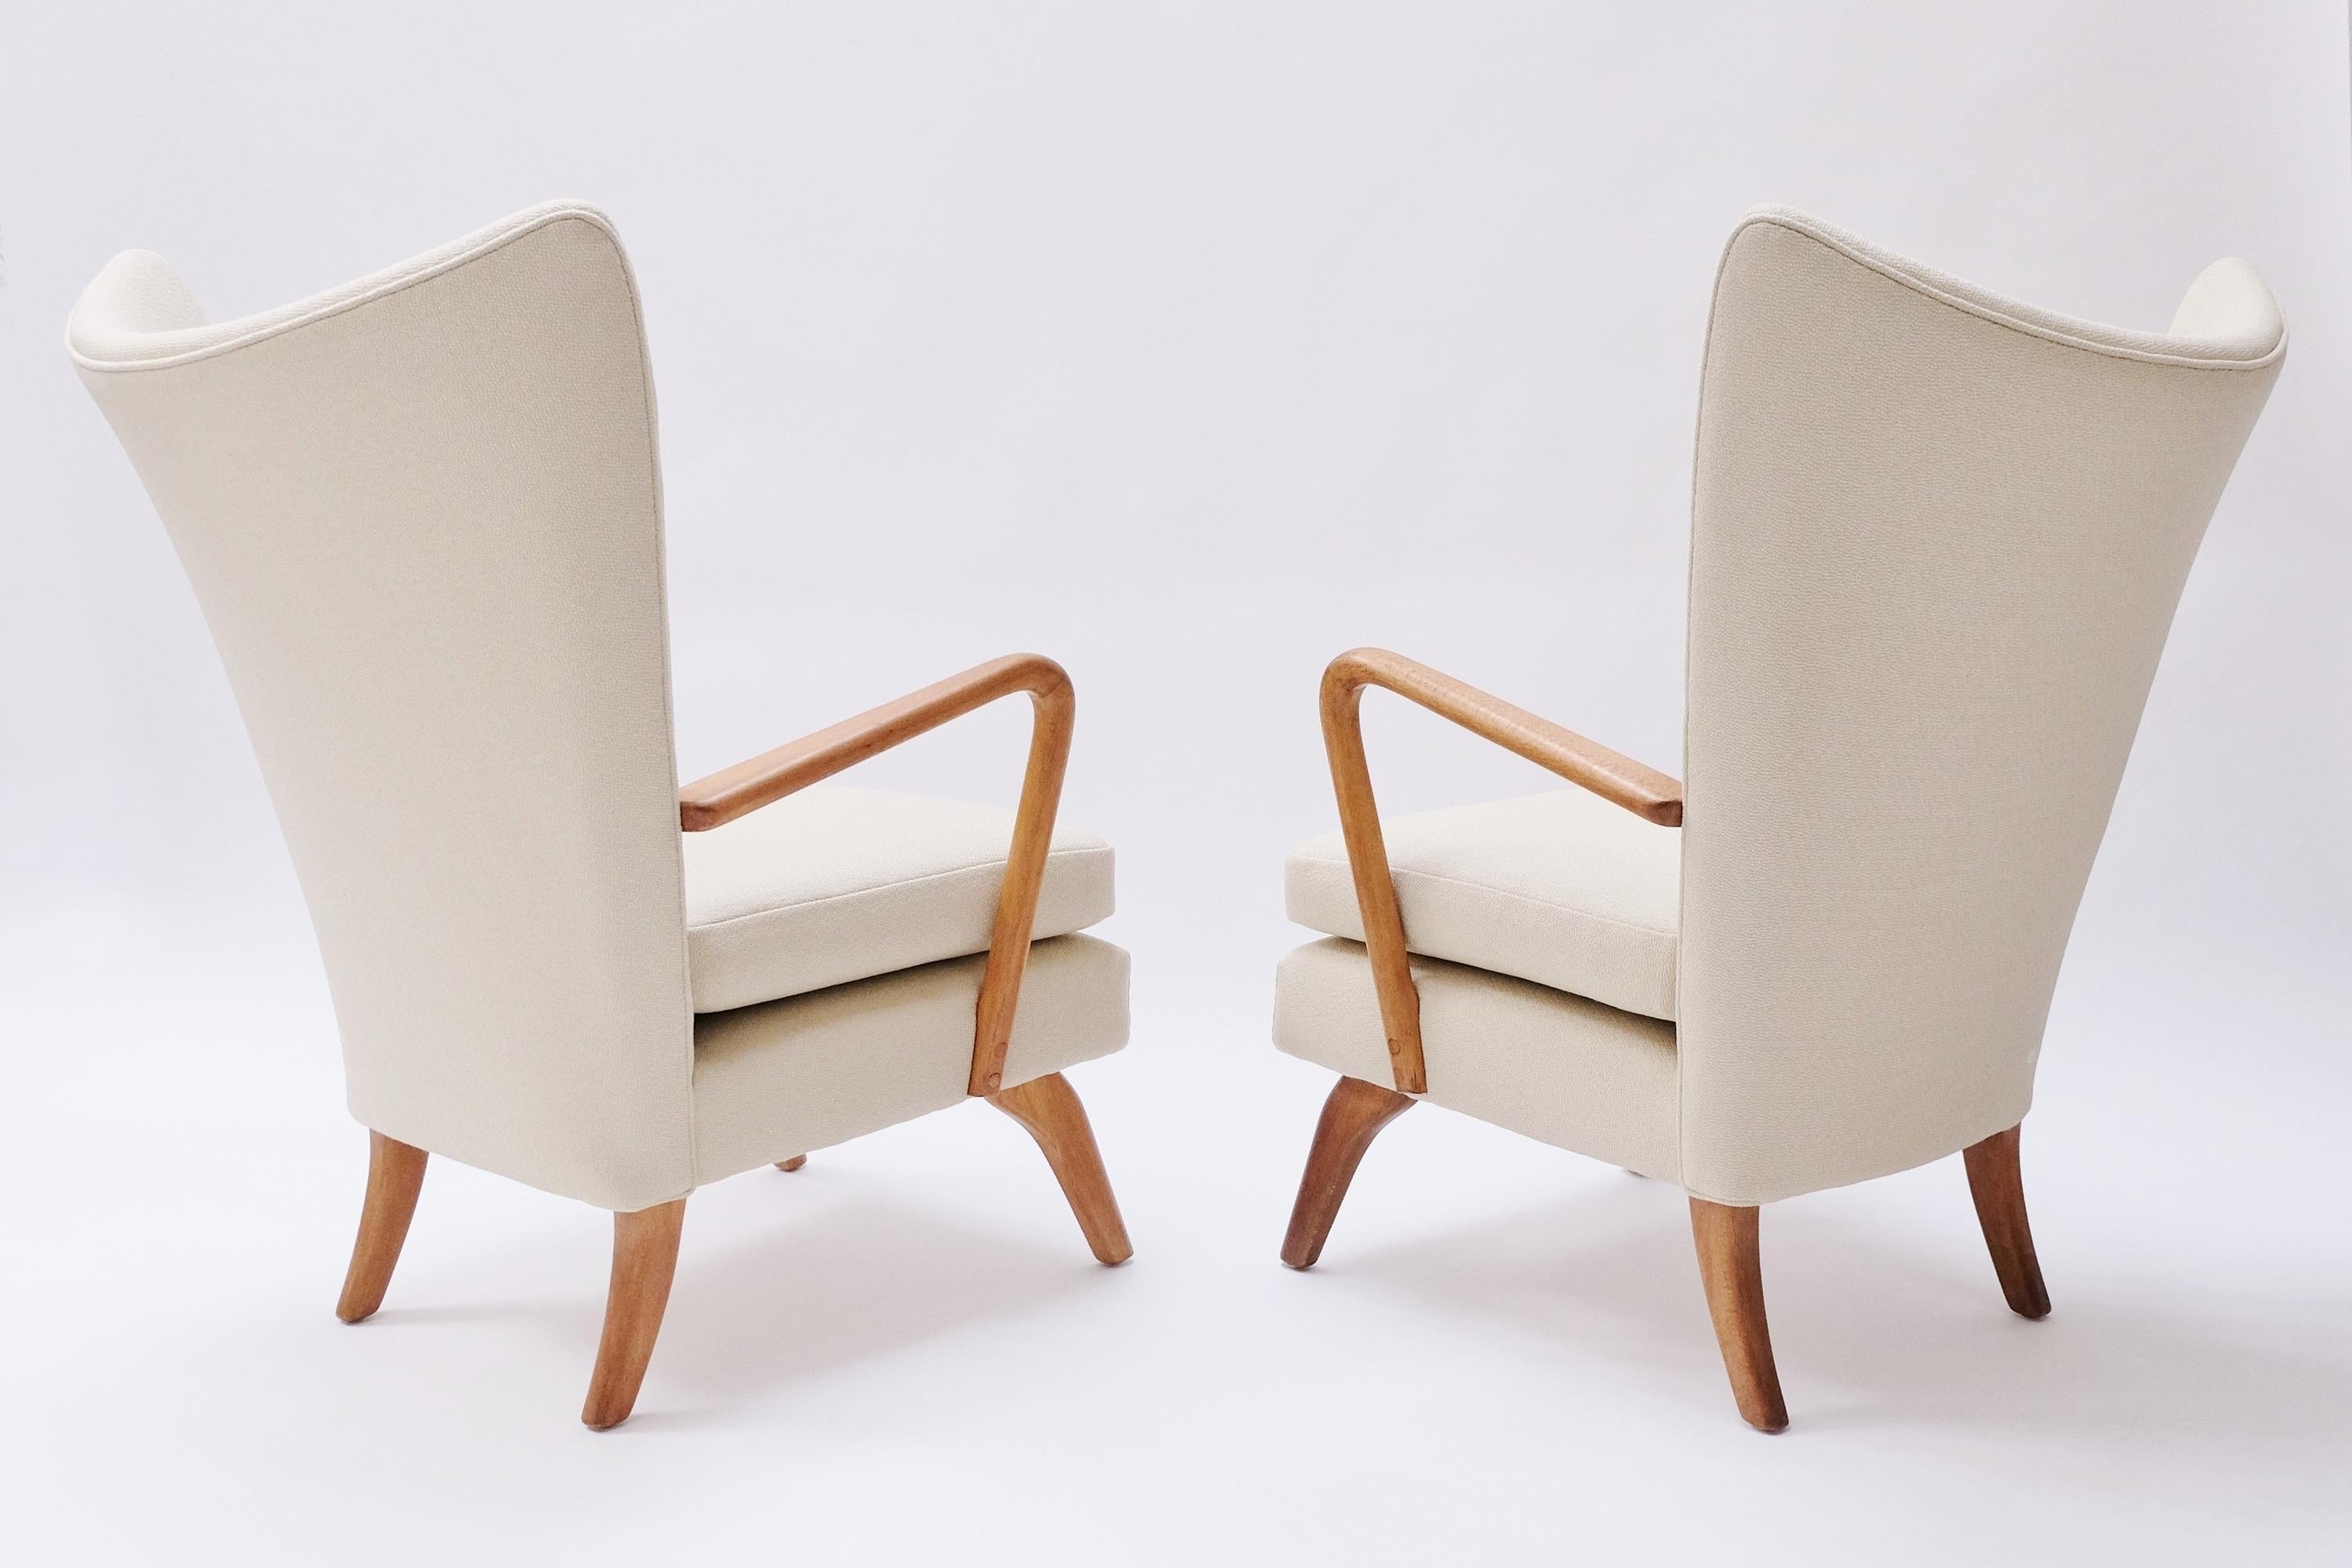 Paire de fauteuils mi-siècle Bambino Wingback de collection, conçus par Howard Keith pour HK Furniture. Angleterre, vers le milieu des années 1950.

Ces superbes fauteuils sont dotés d'un dossier à ailettes joliment incurvé avec des boutons